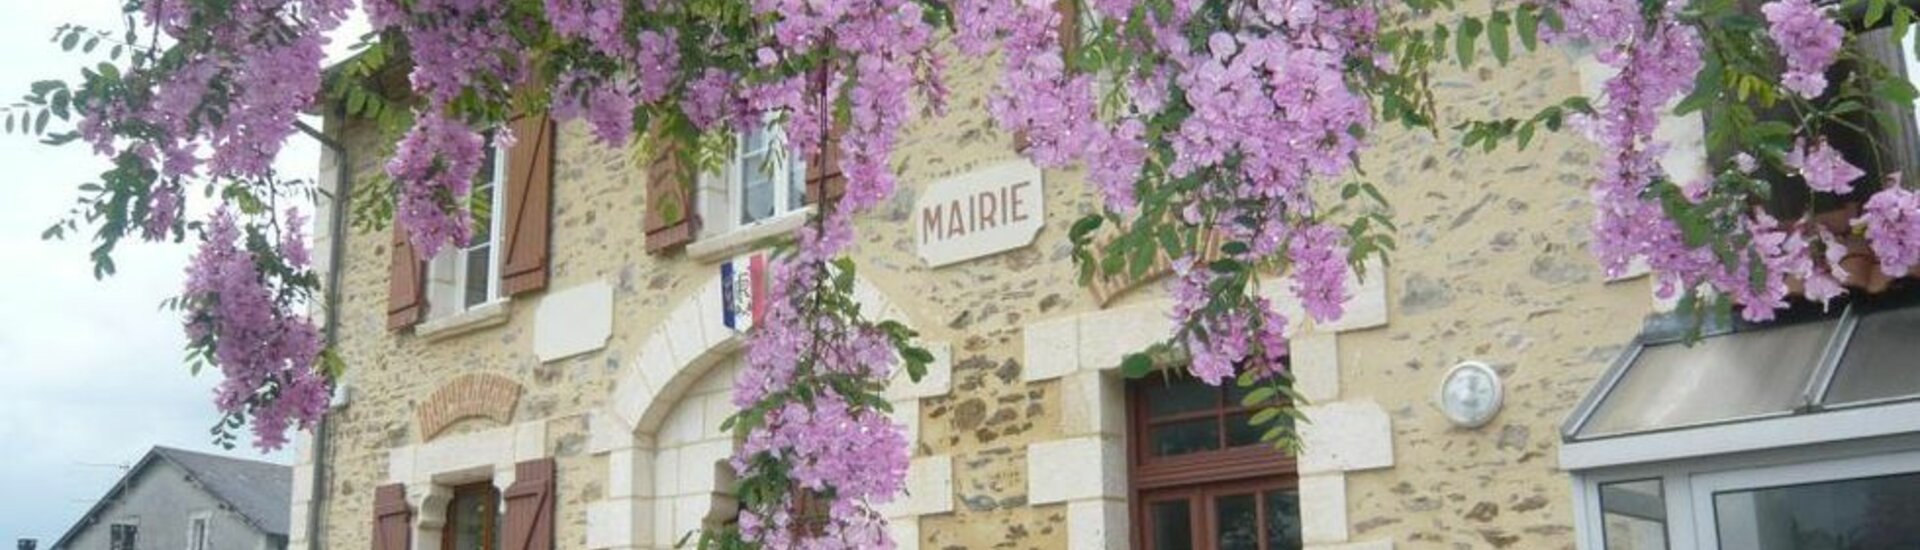 Contactez la Mairie de Beyssenac en Corrèze 19